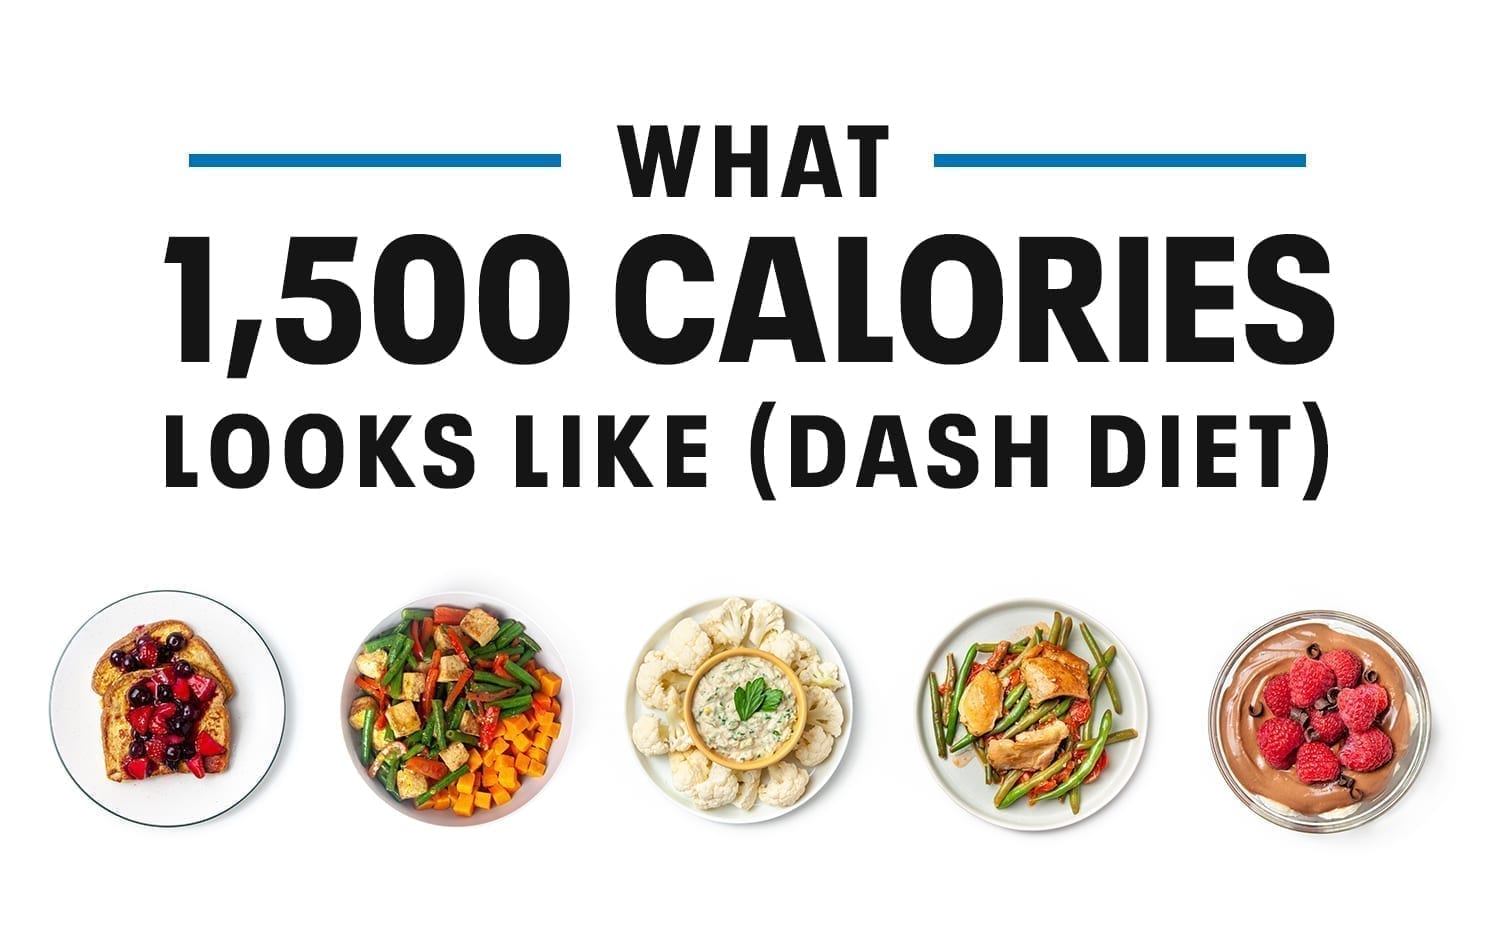 Dieta 500 calorias